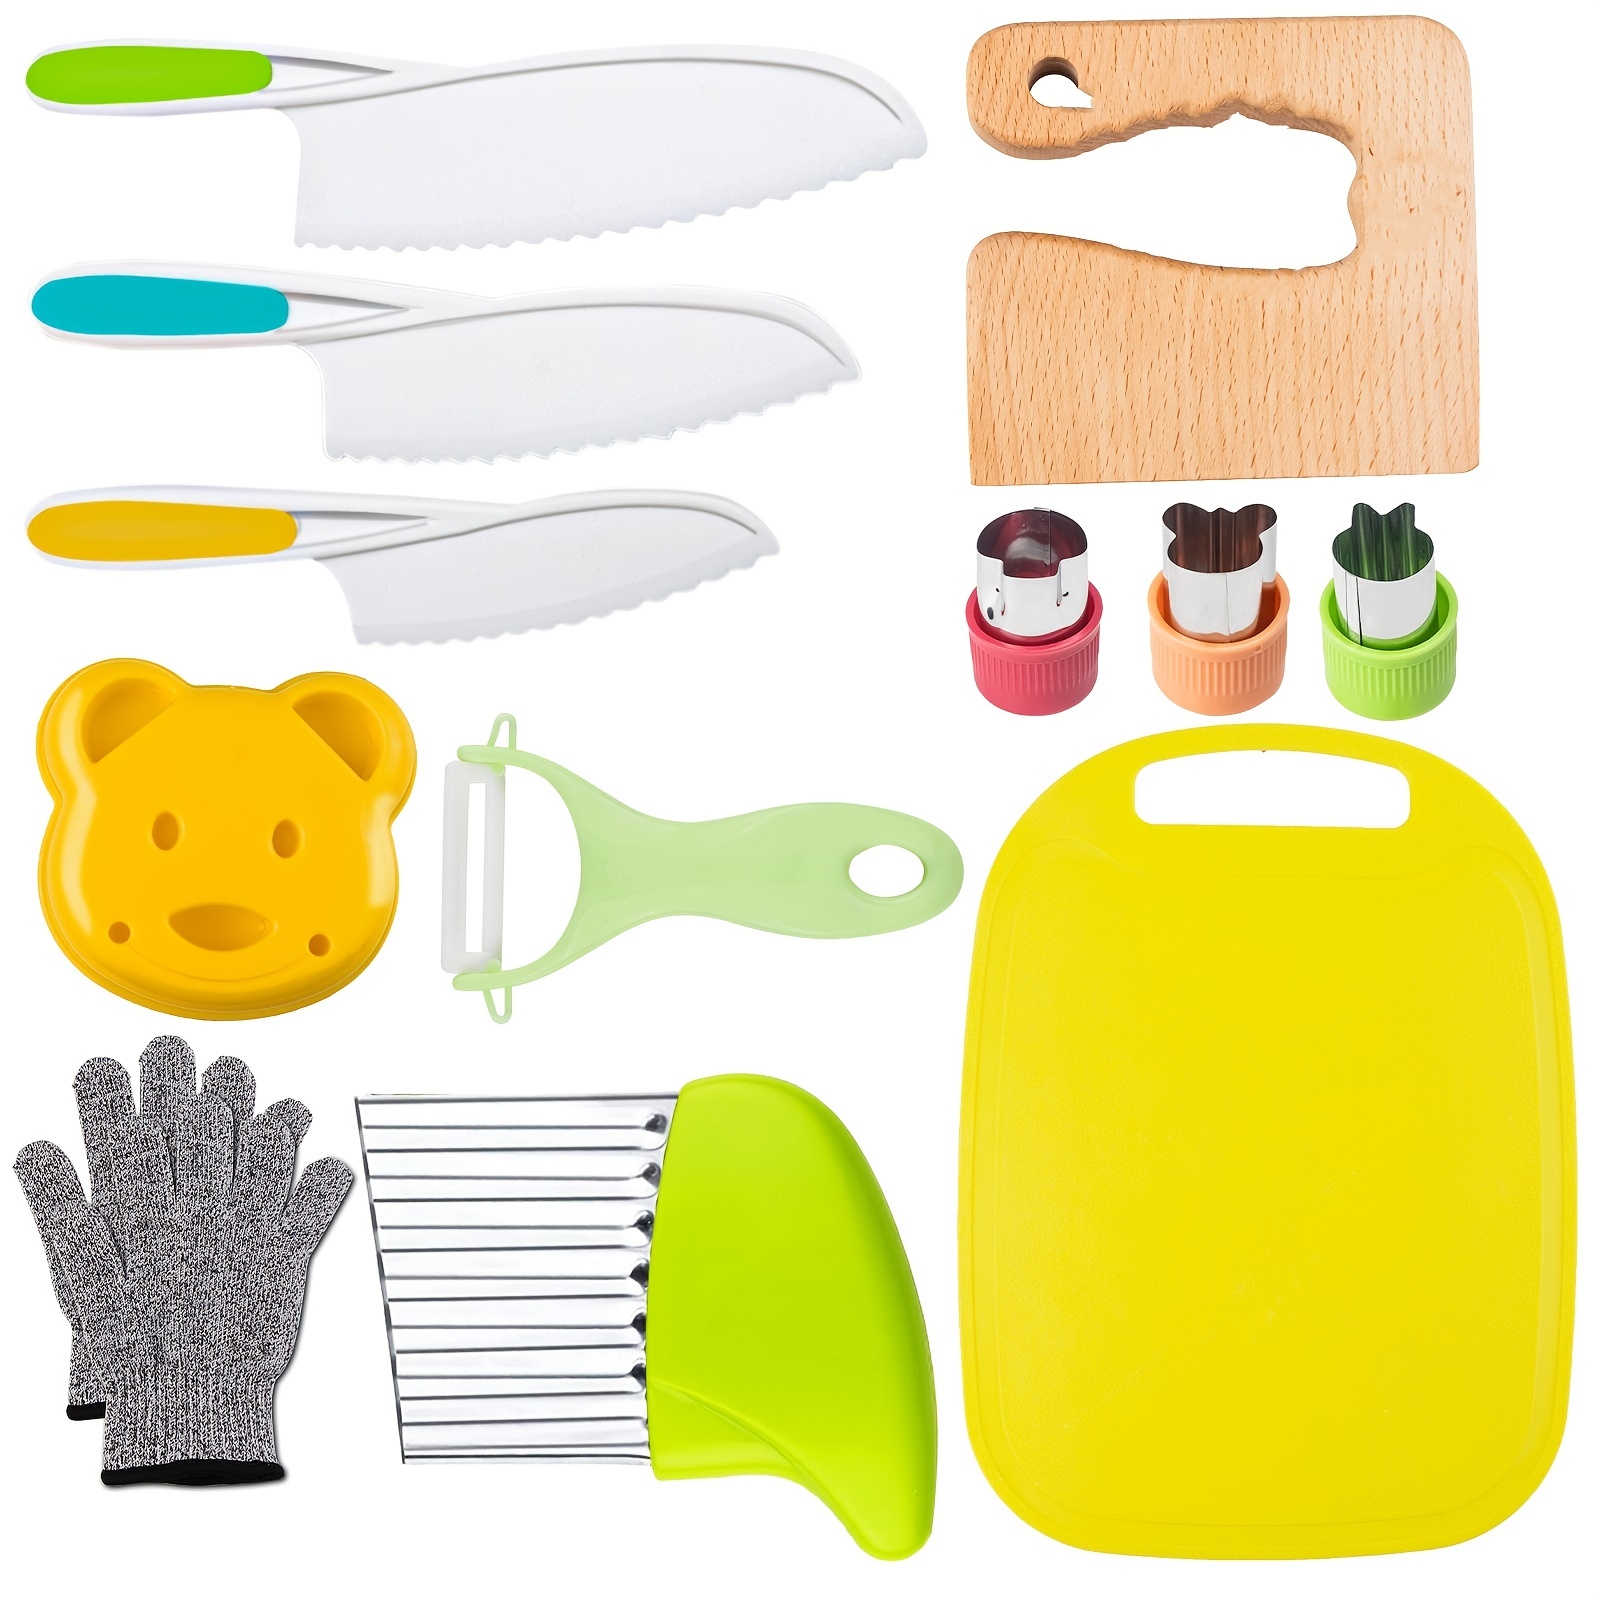  Leking Juego de 7 cuchillos de cocina para niños, bordes  dentados de plástico, juego de cuchillos para niños para cocinar y cortar  pasteles, frutas y verduras, perfectamente seguros para niños pequeños